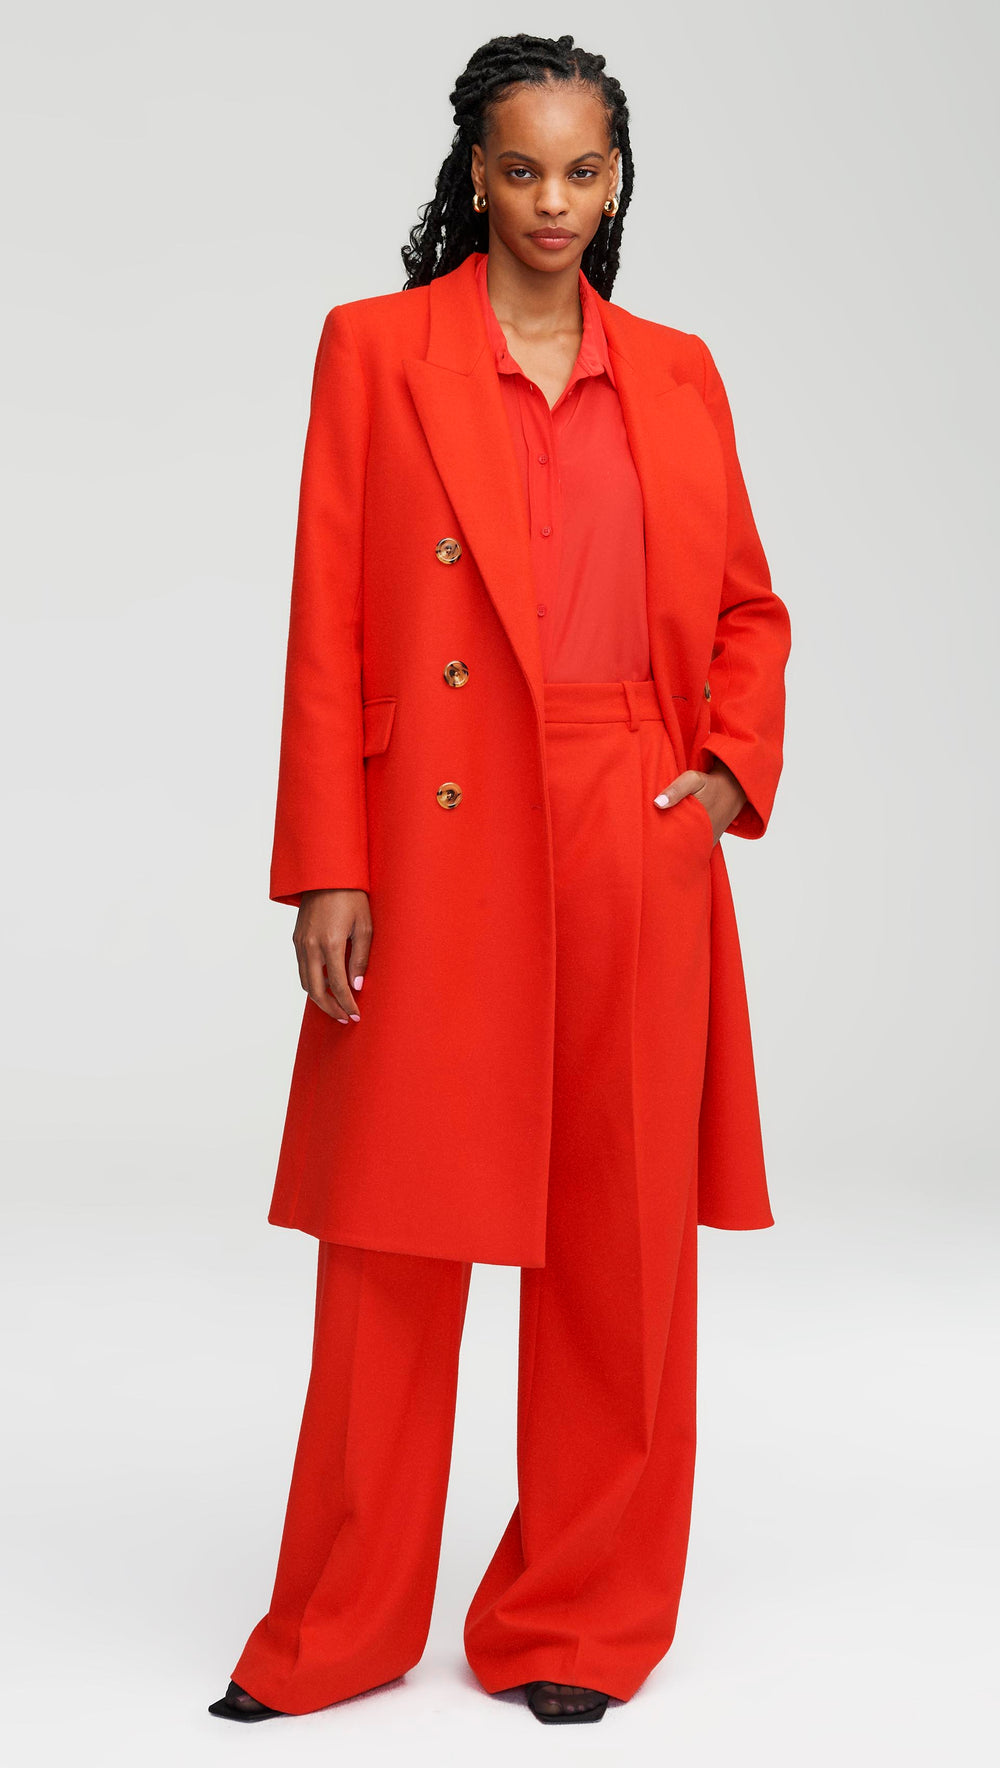 Peak Lapel Coat in Wool Twill | Scarlet